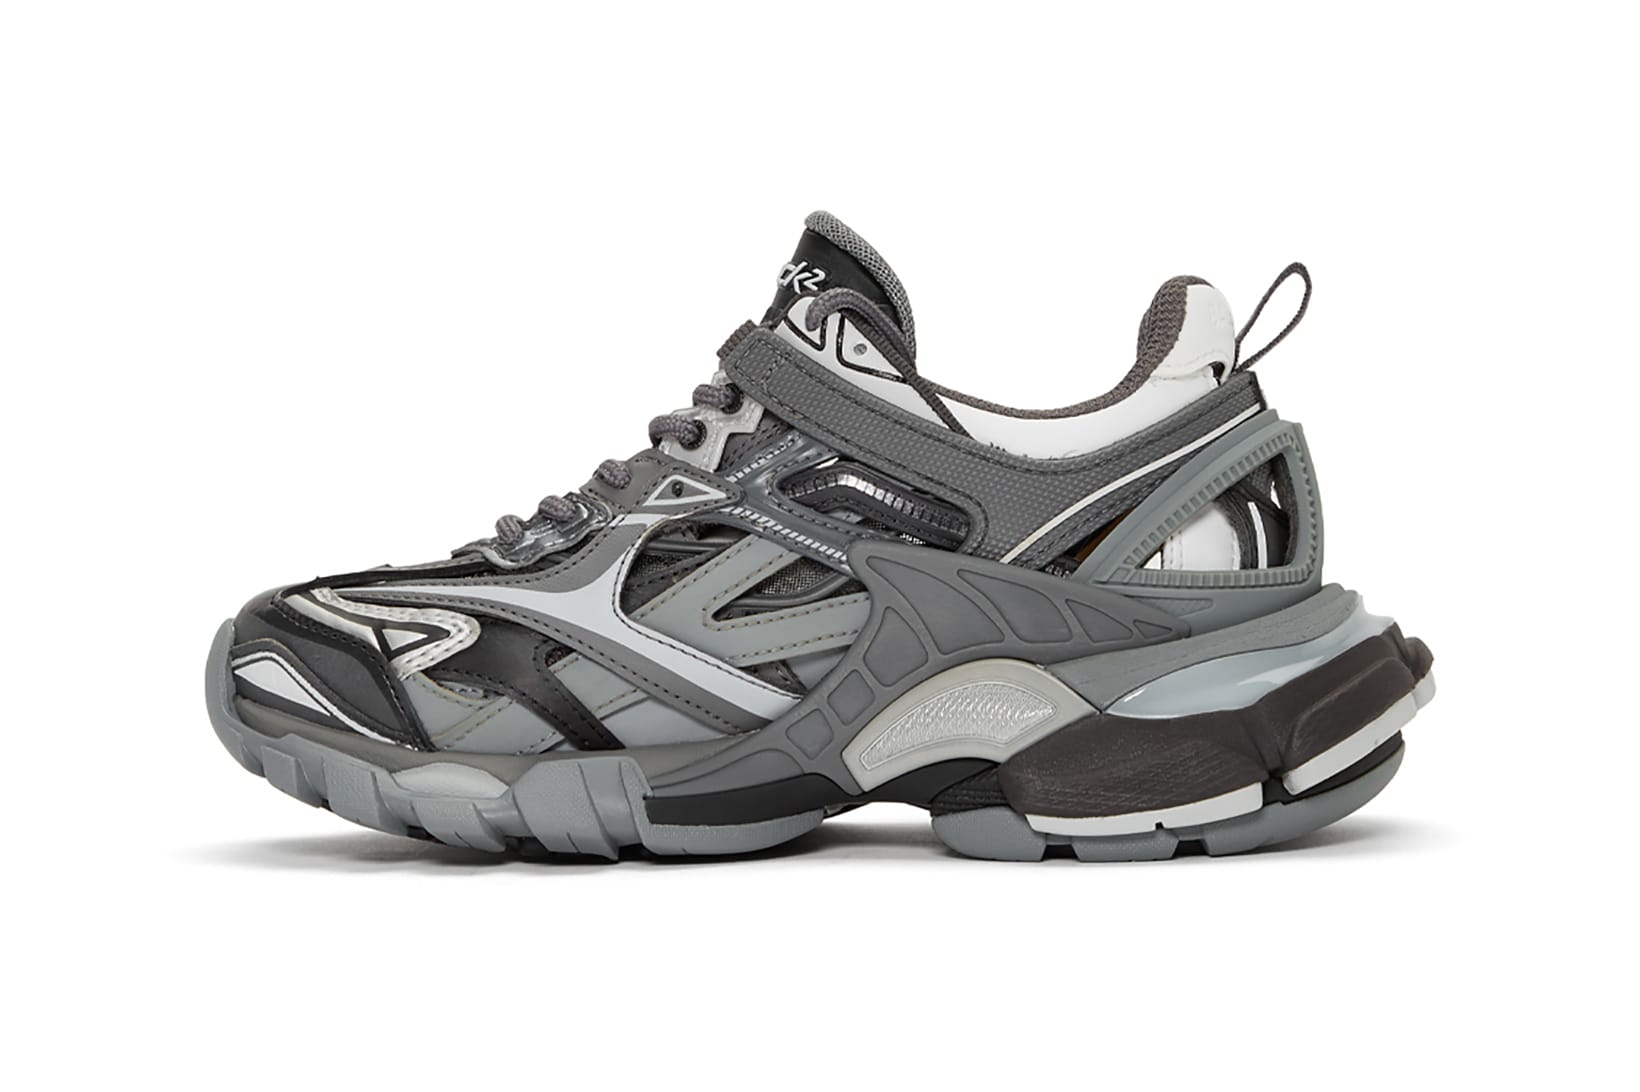 balenciaga gray sneakers